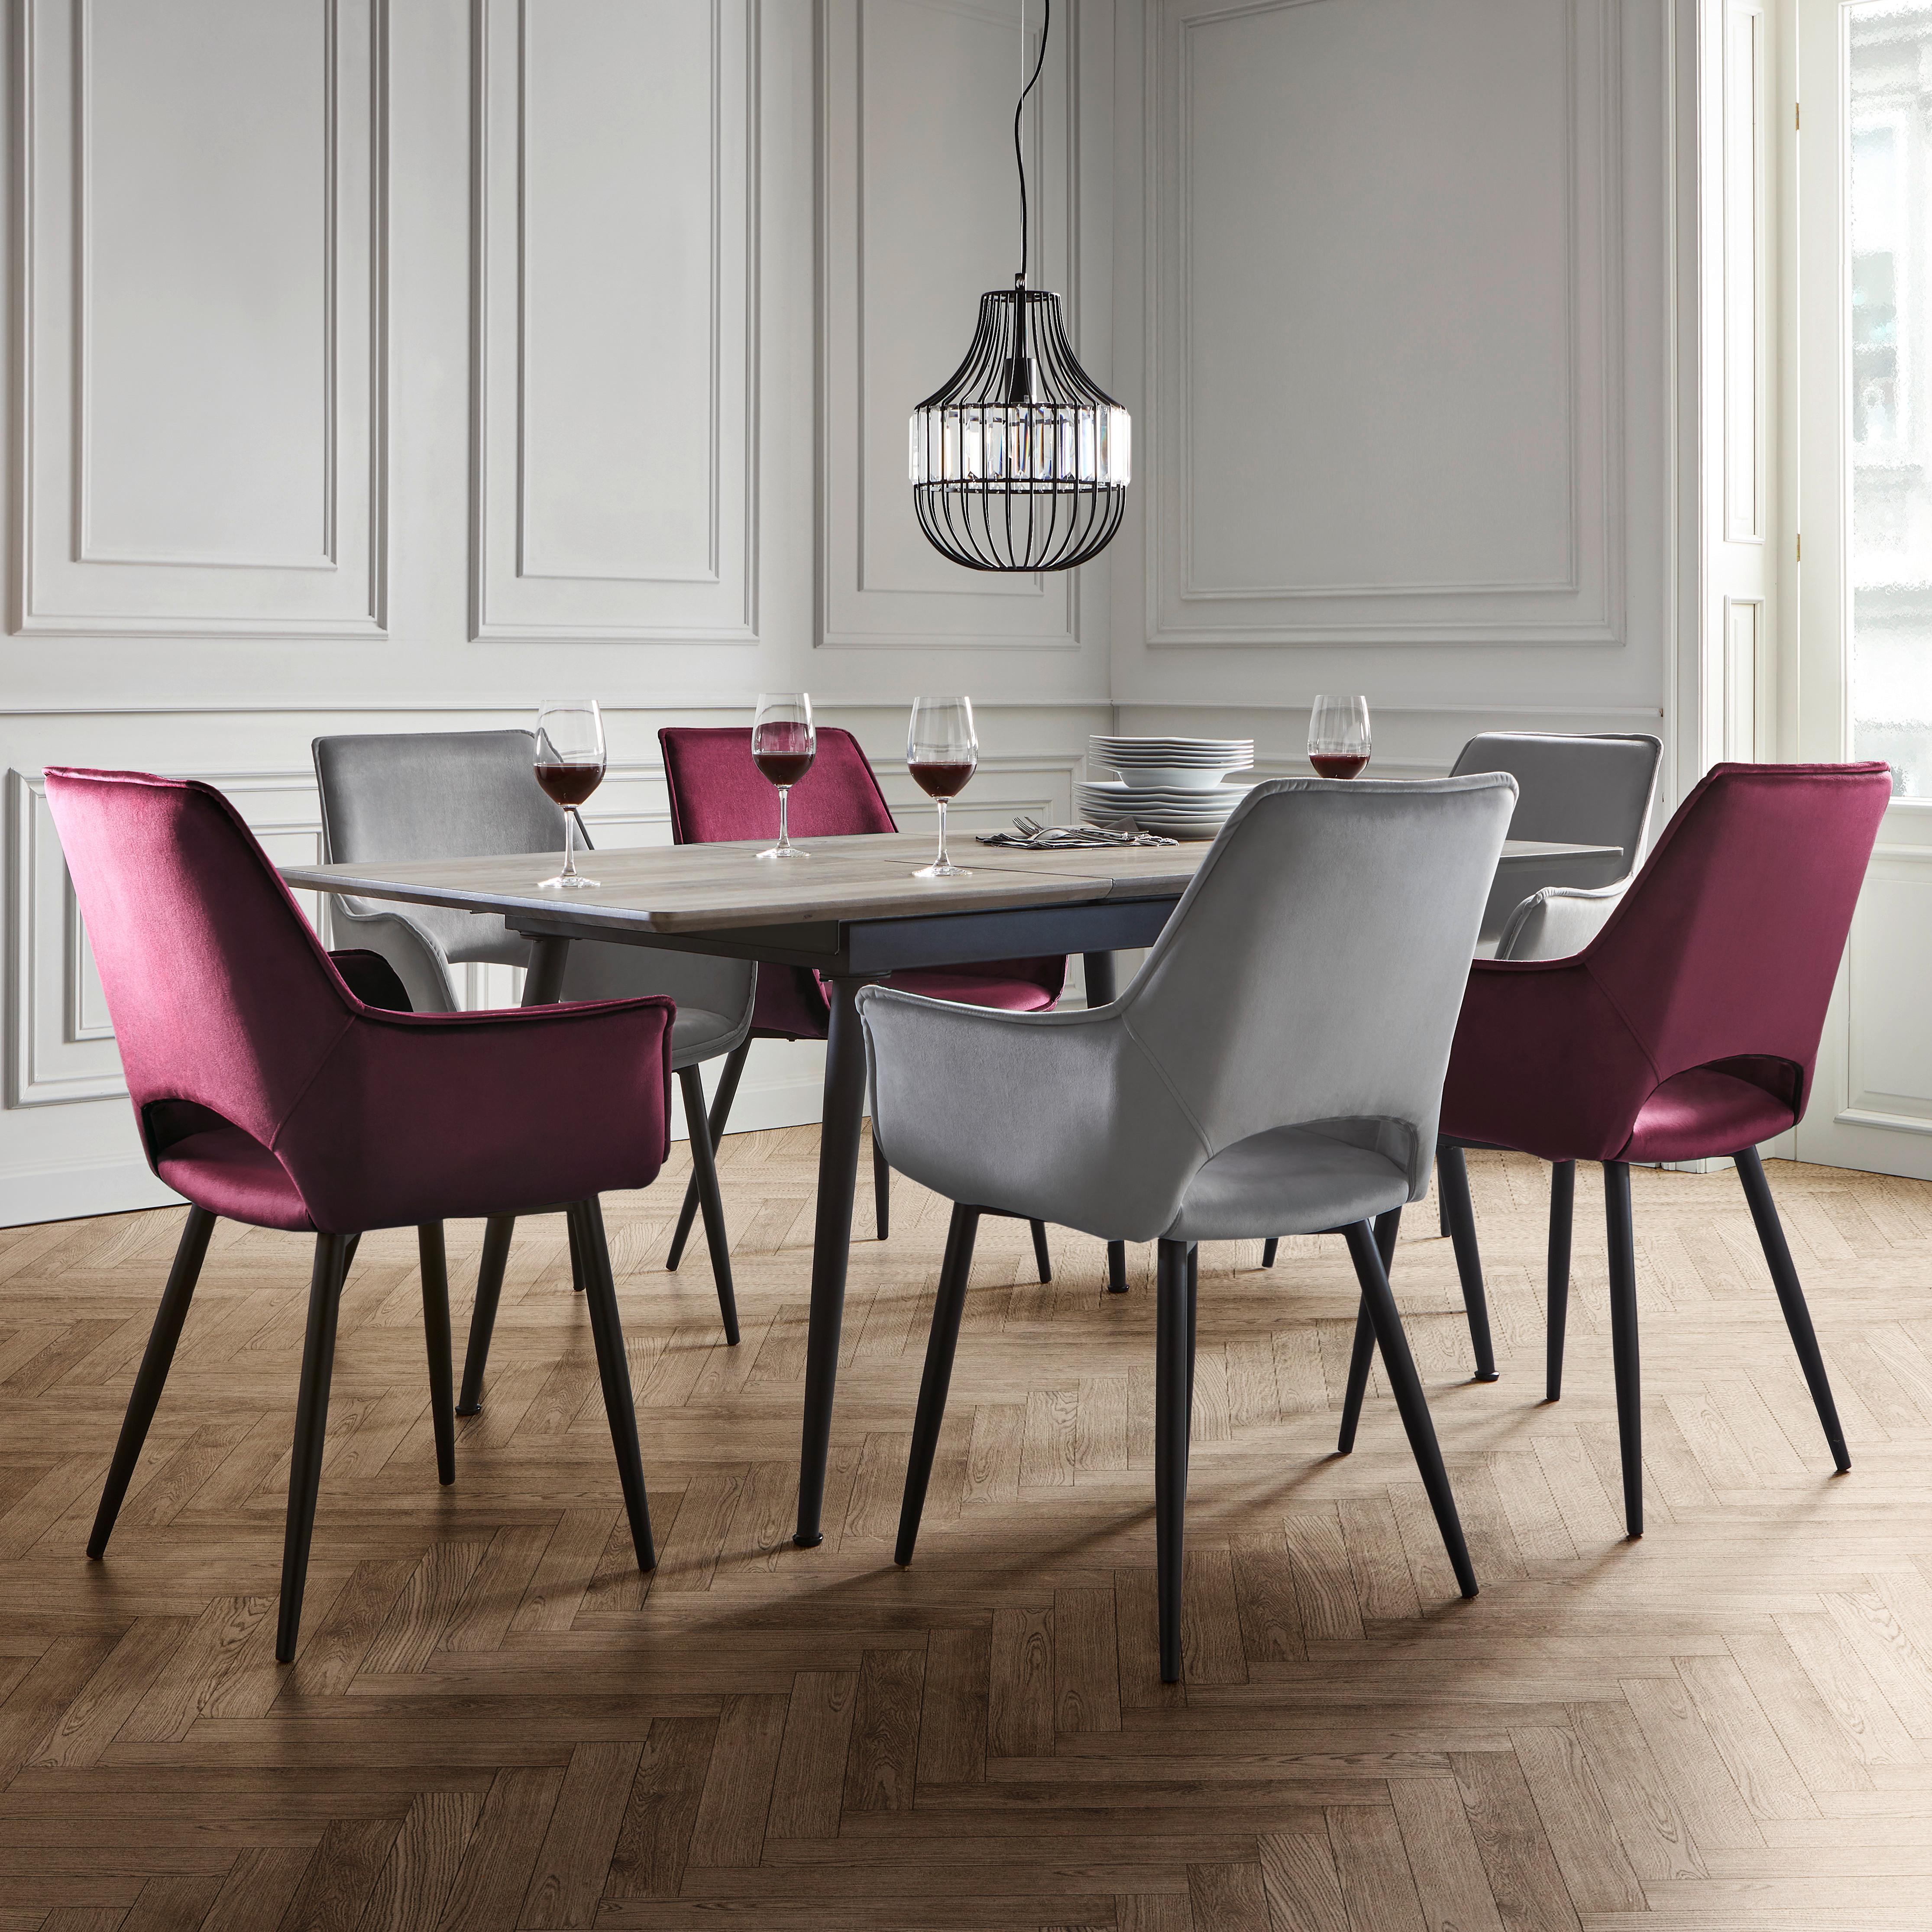 Rozkladací Stôl Vivian 140-180x90 Cm - farby dubu/čierna, Moderný, kov/drevo (140-180/90/76cm) - Modern Living